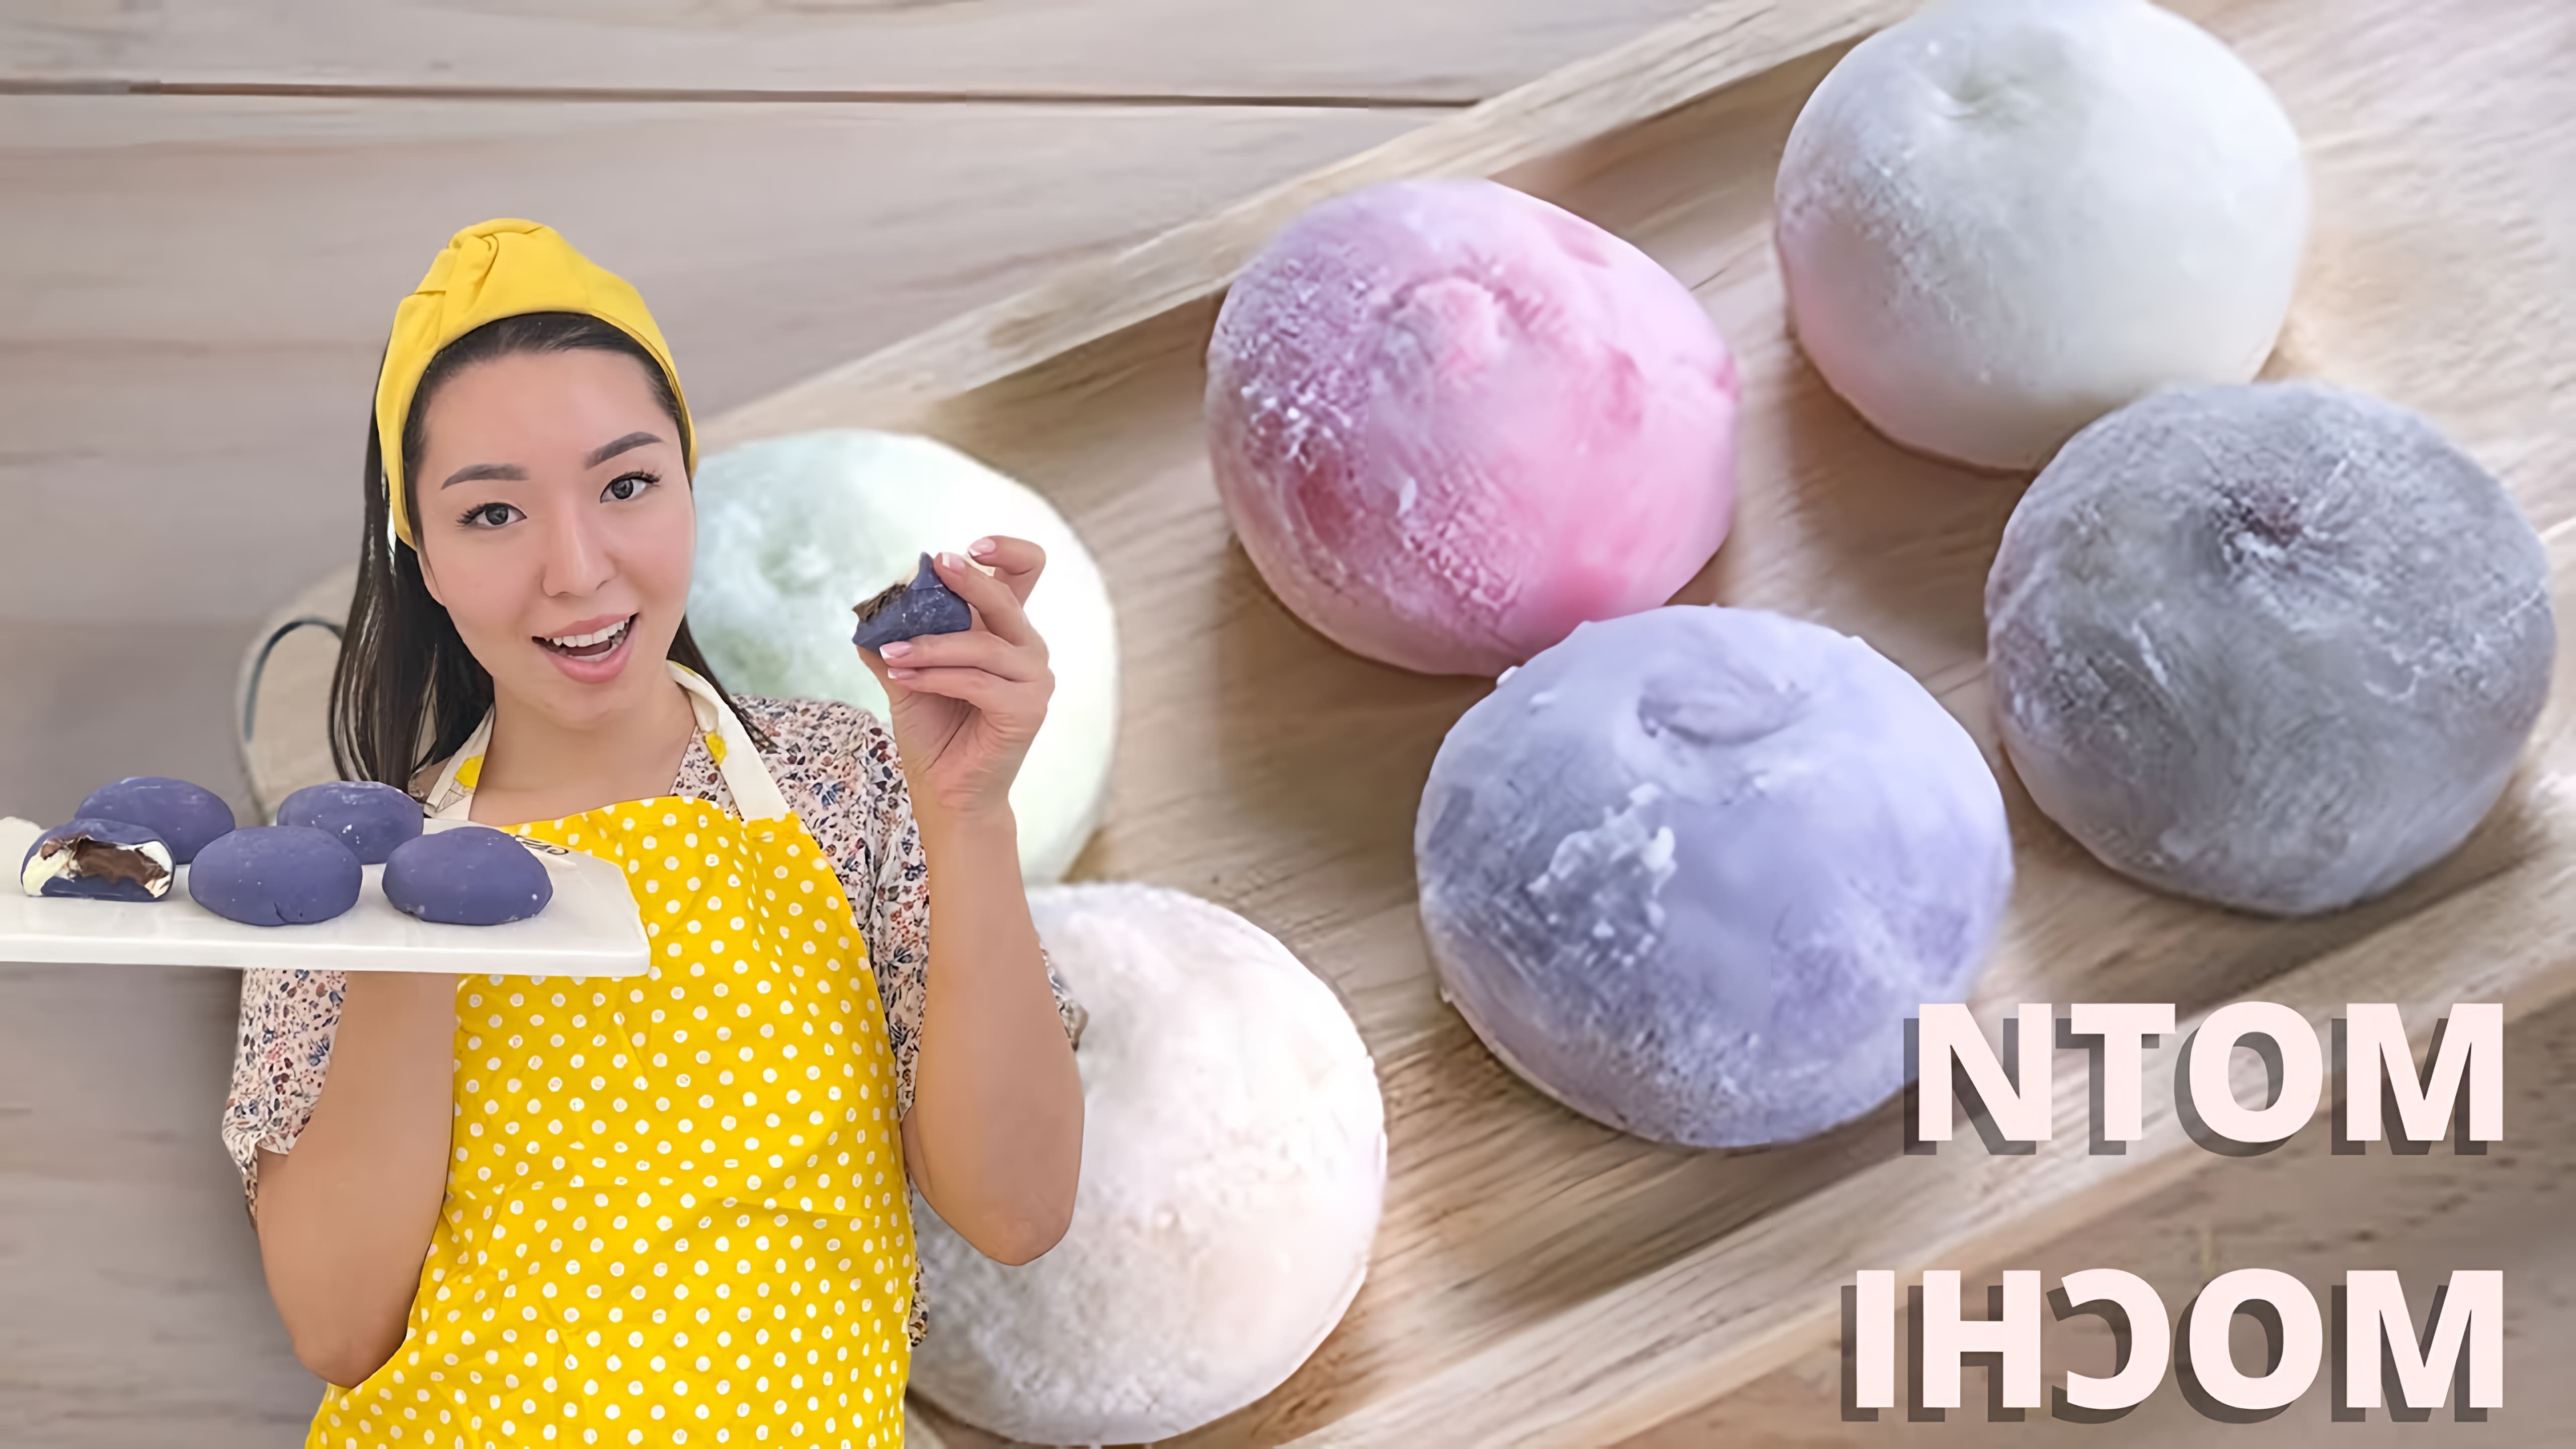 В данном видео Гульжаннат рассказывает о японском десерте Моти, который готовится из рисовой муки, сахара, молока, воды и подсолнечного масла